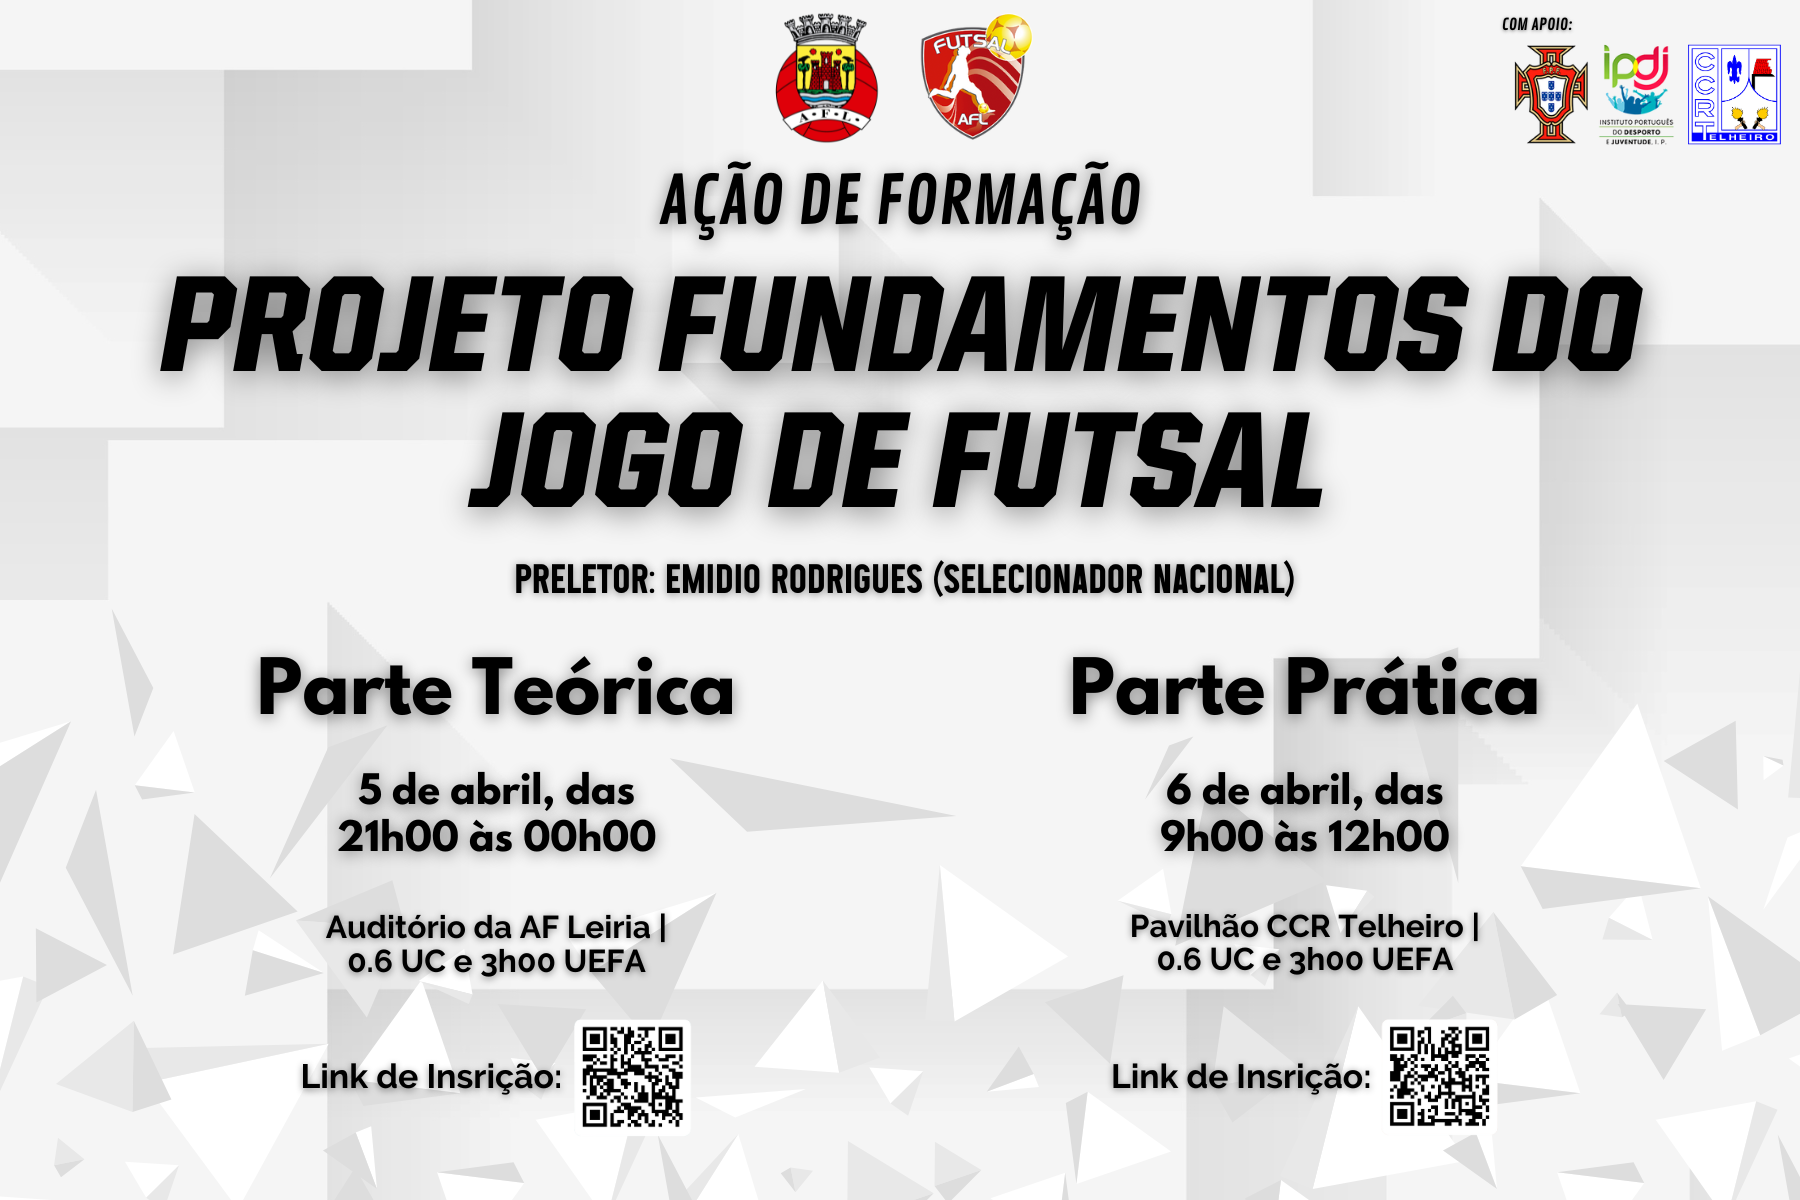 Ação de Formação - “Projeto Fundamentos do Jogo de Futsal” - Inscrição